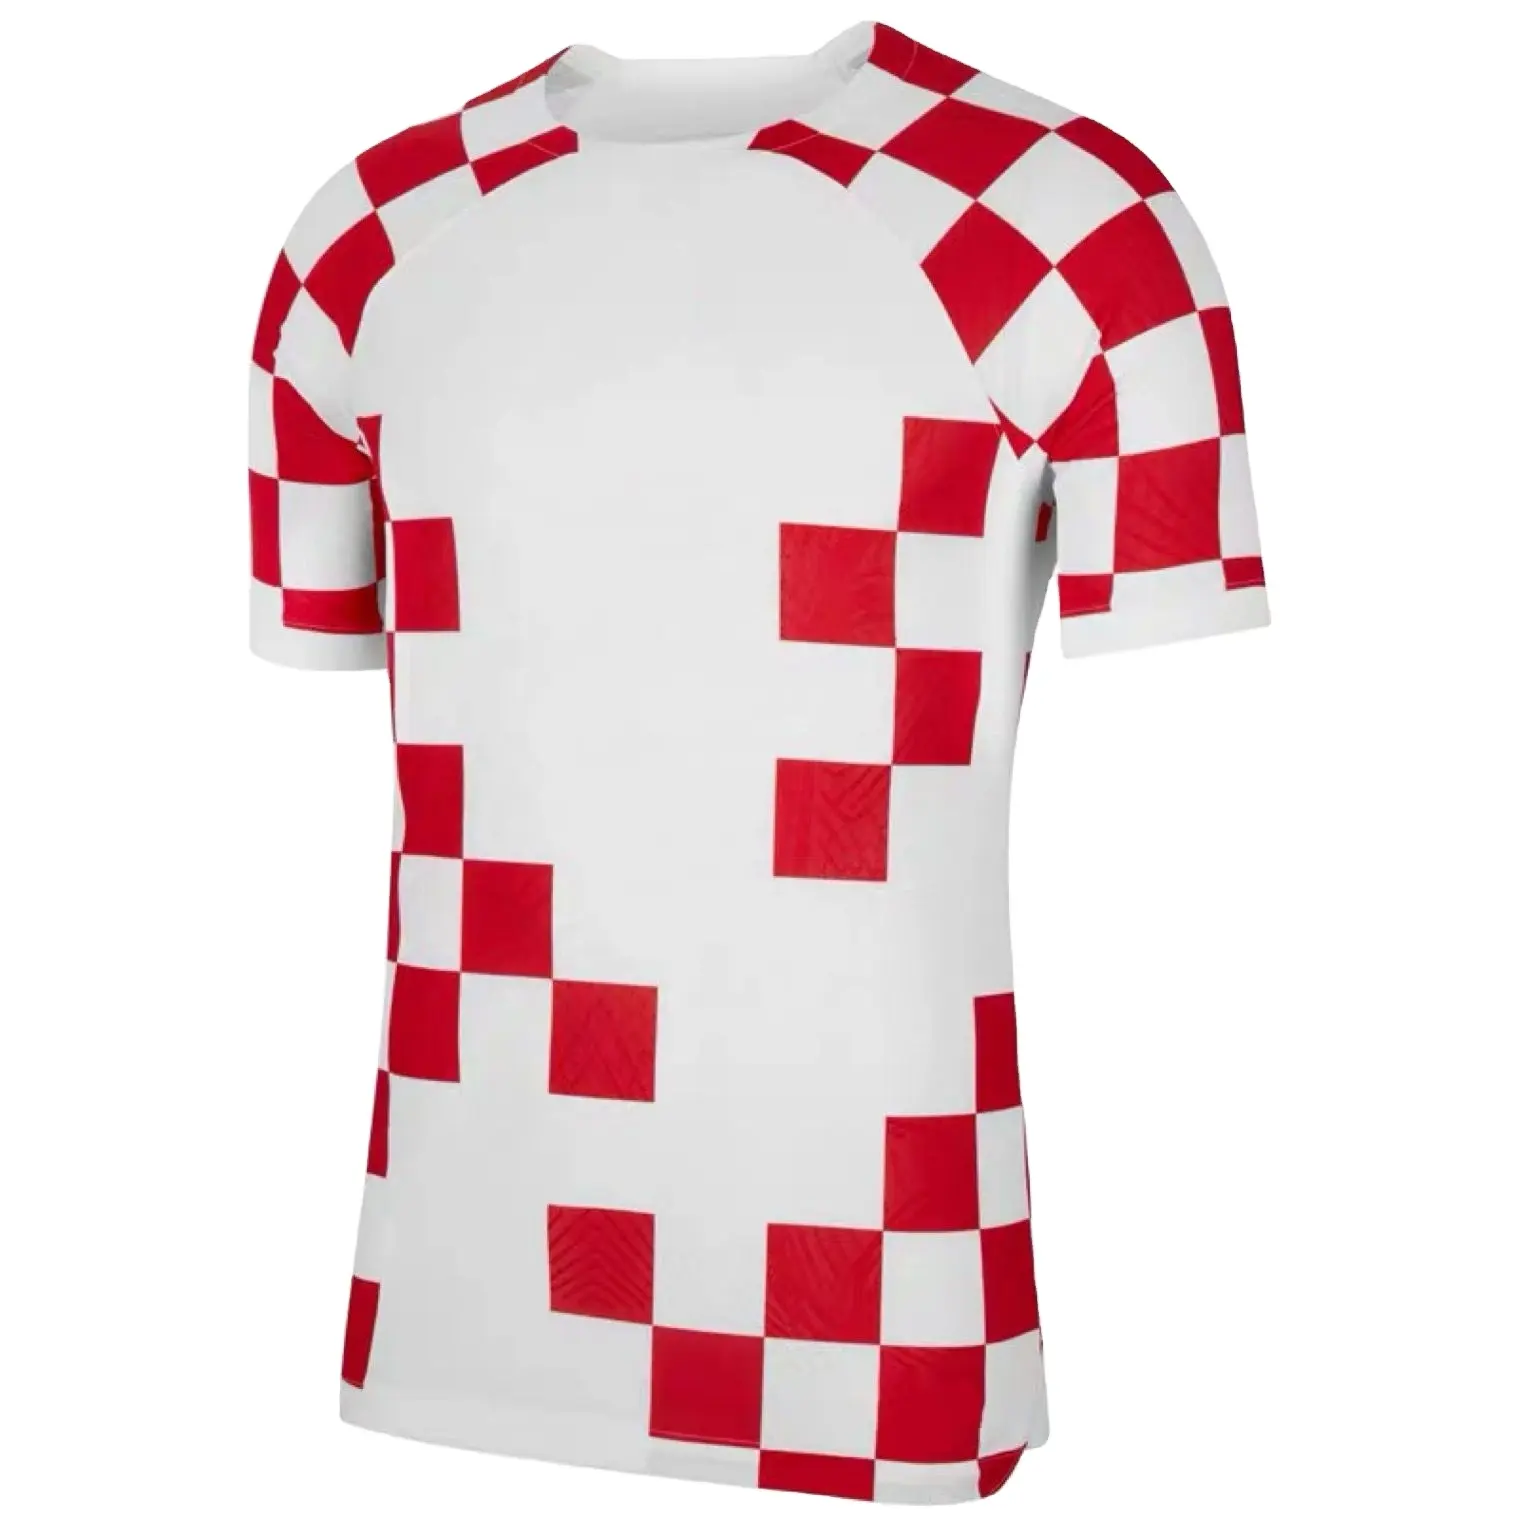 2022ทีมชาติโครเอเชียเสื้อฟุตบอลทีมชาติไทยสีแดงสีขาว